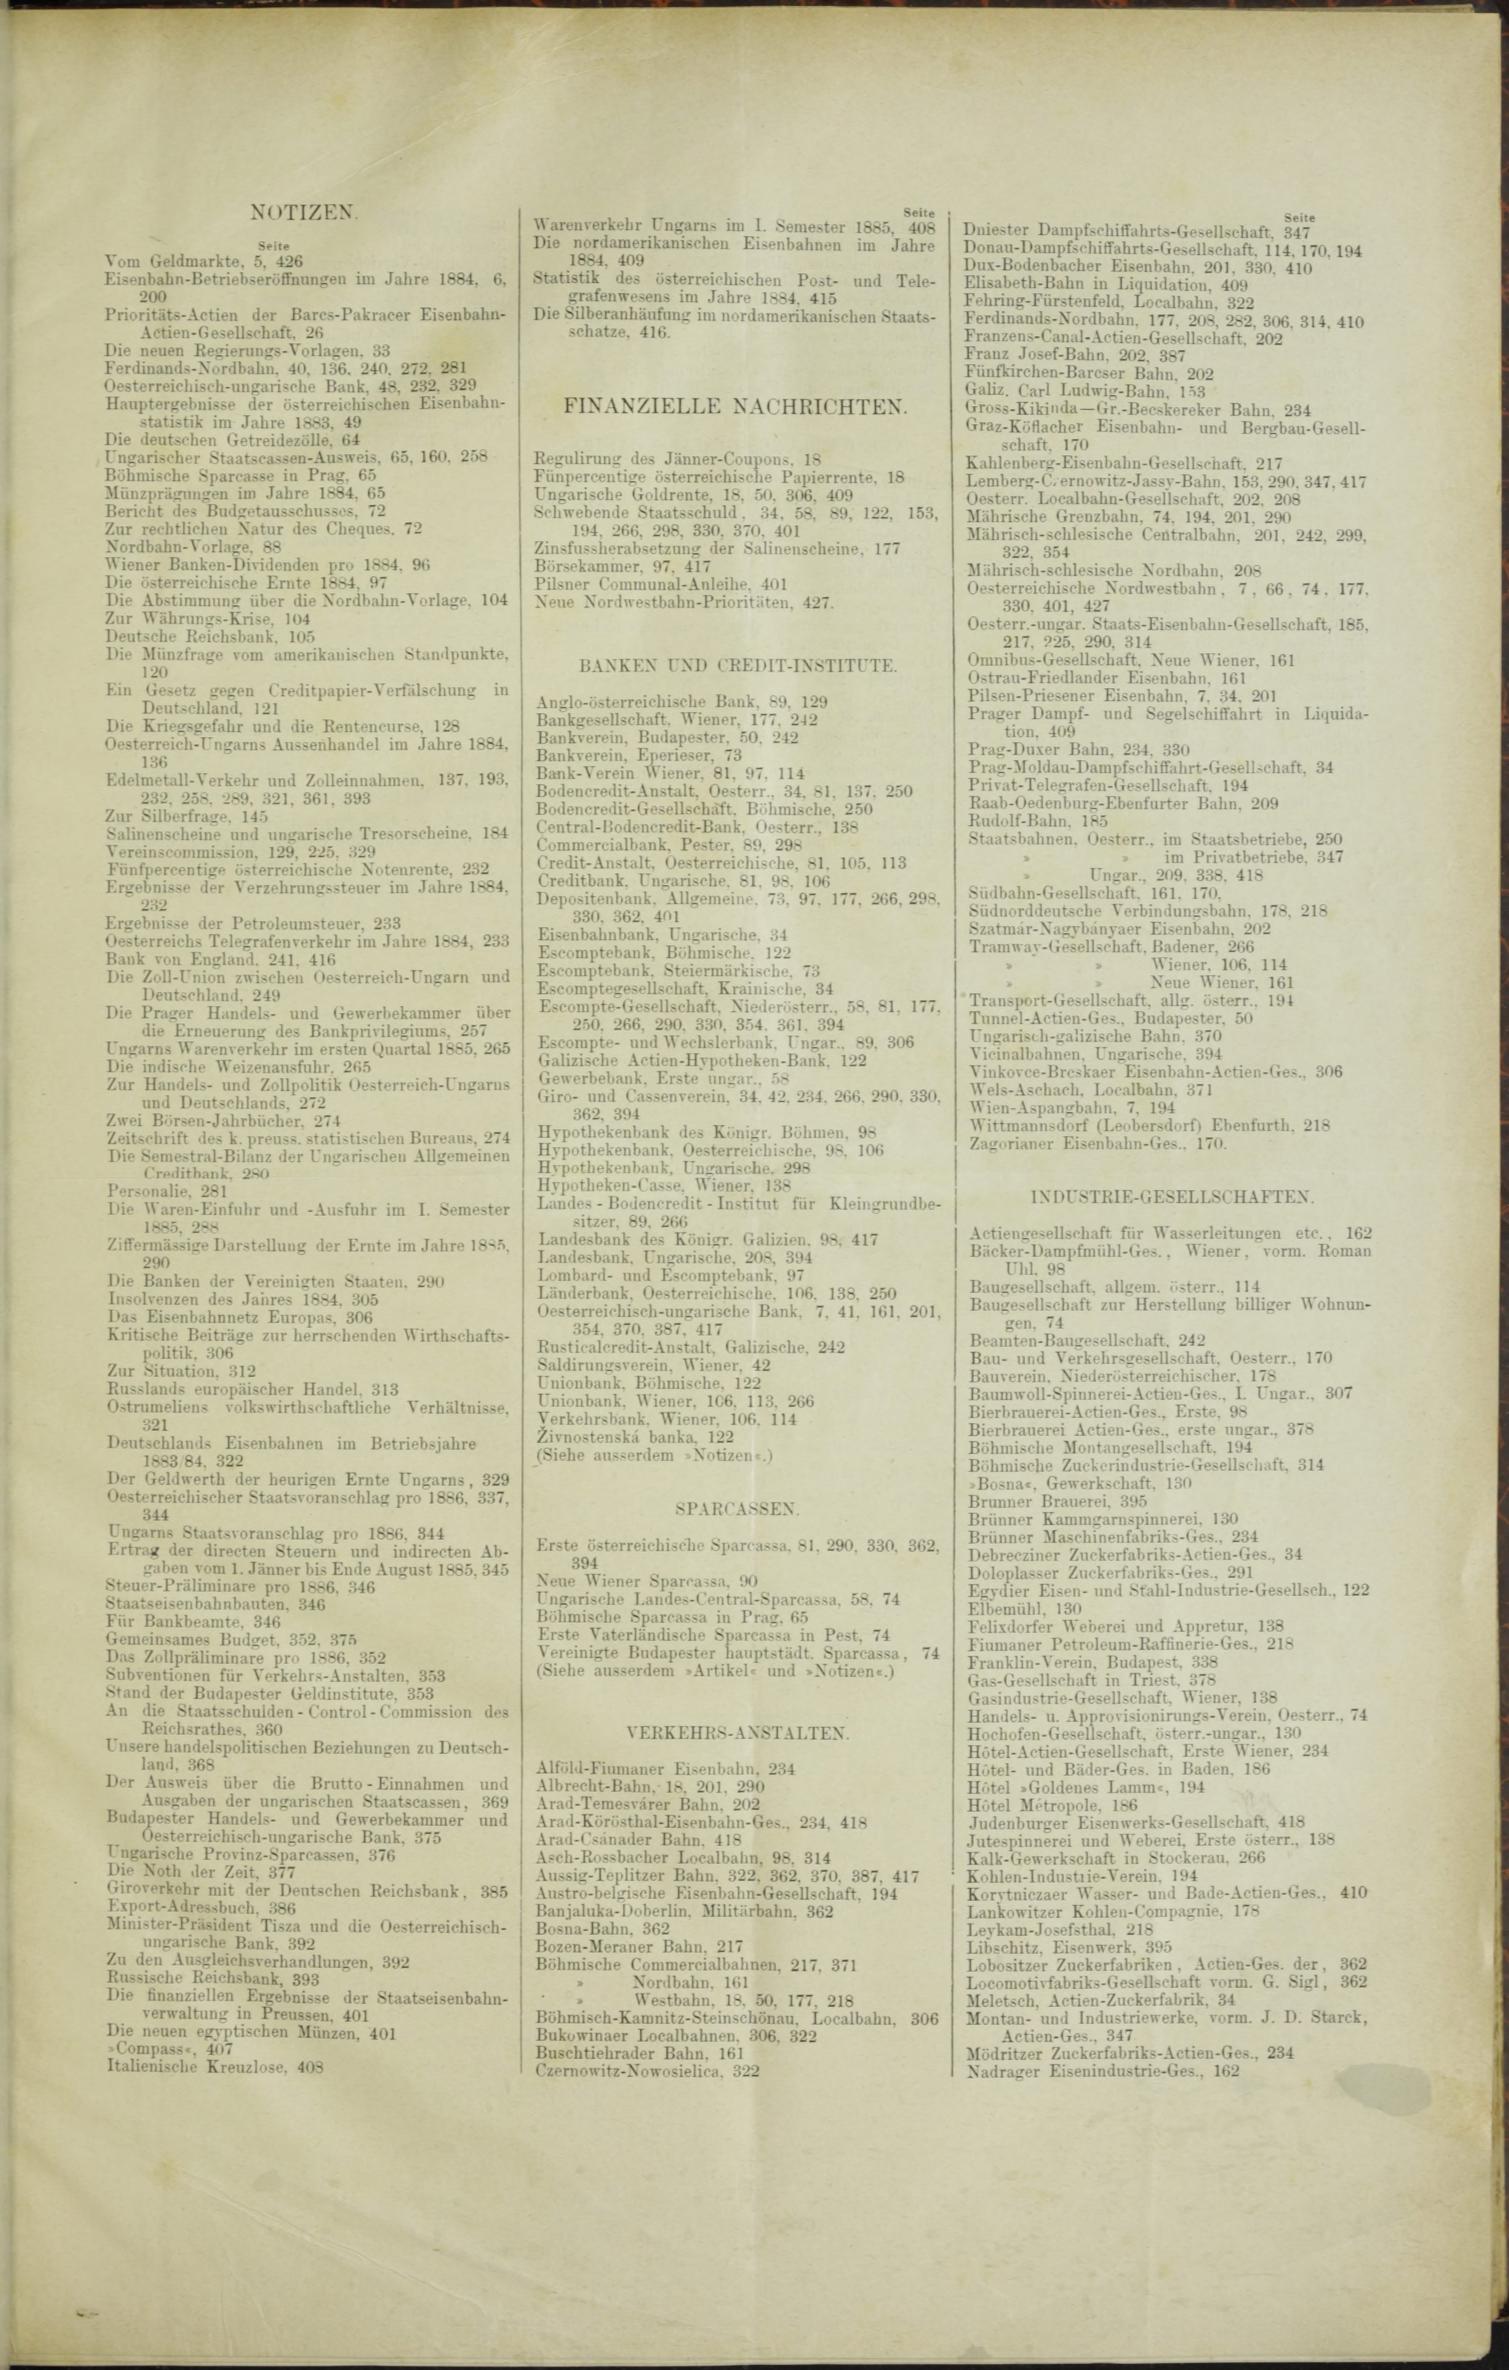 Der Tresor 06.08.1885 - Seite 9